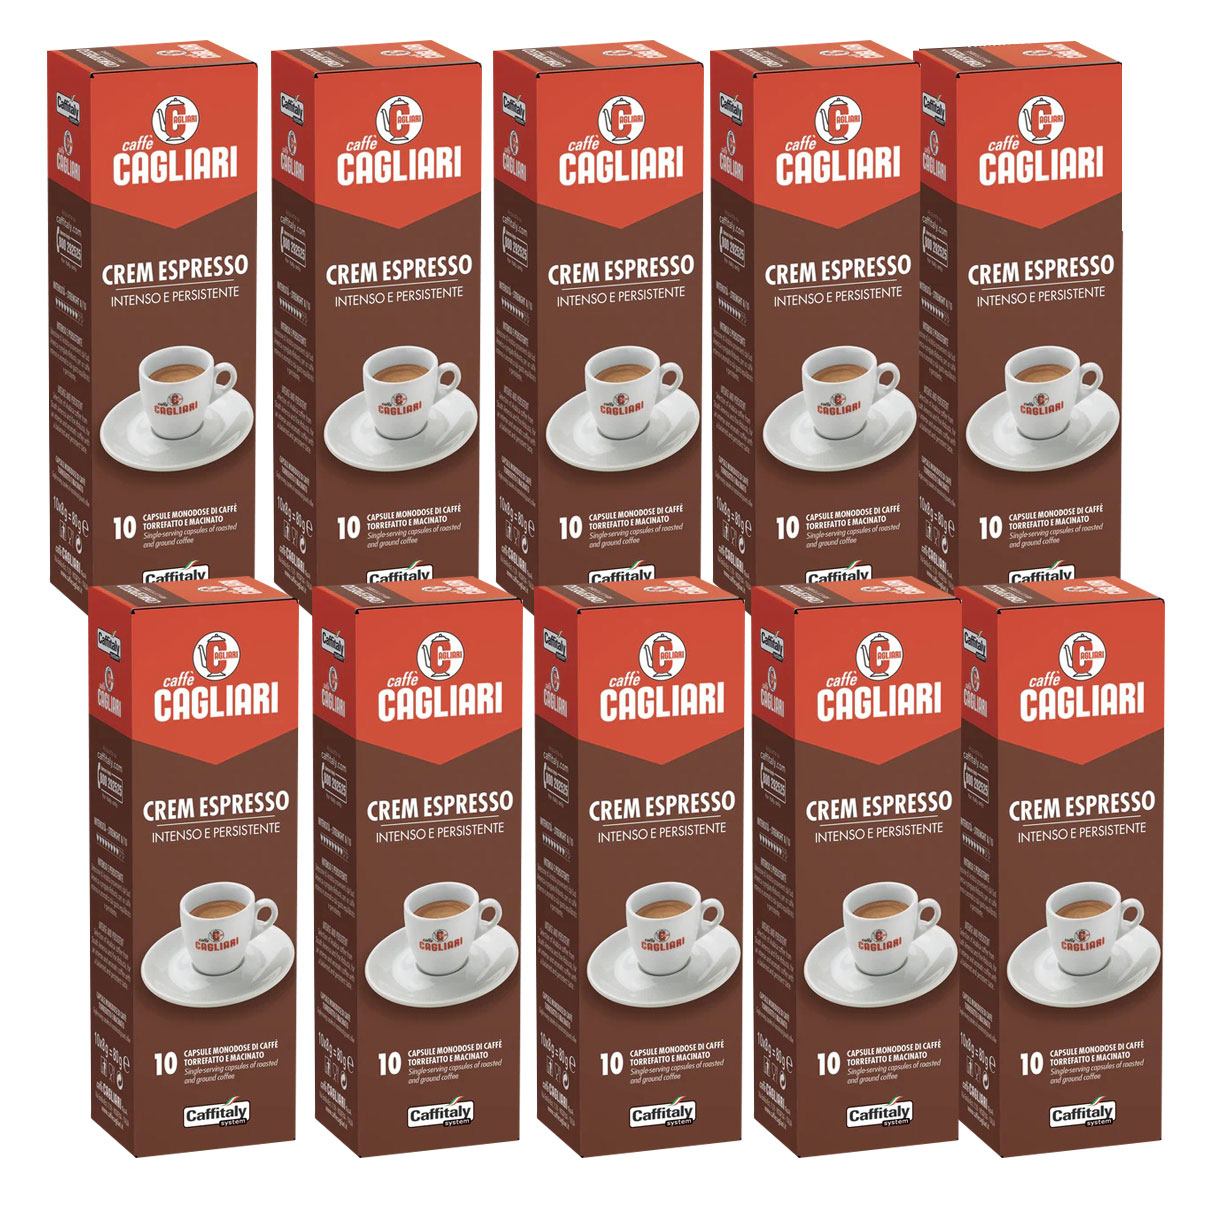 100 Capsule Caffitaly System Caffe' Cremespresso Pieno e Intenso offerte  online al miglior prezzo